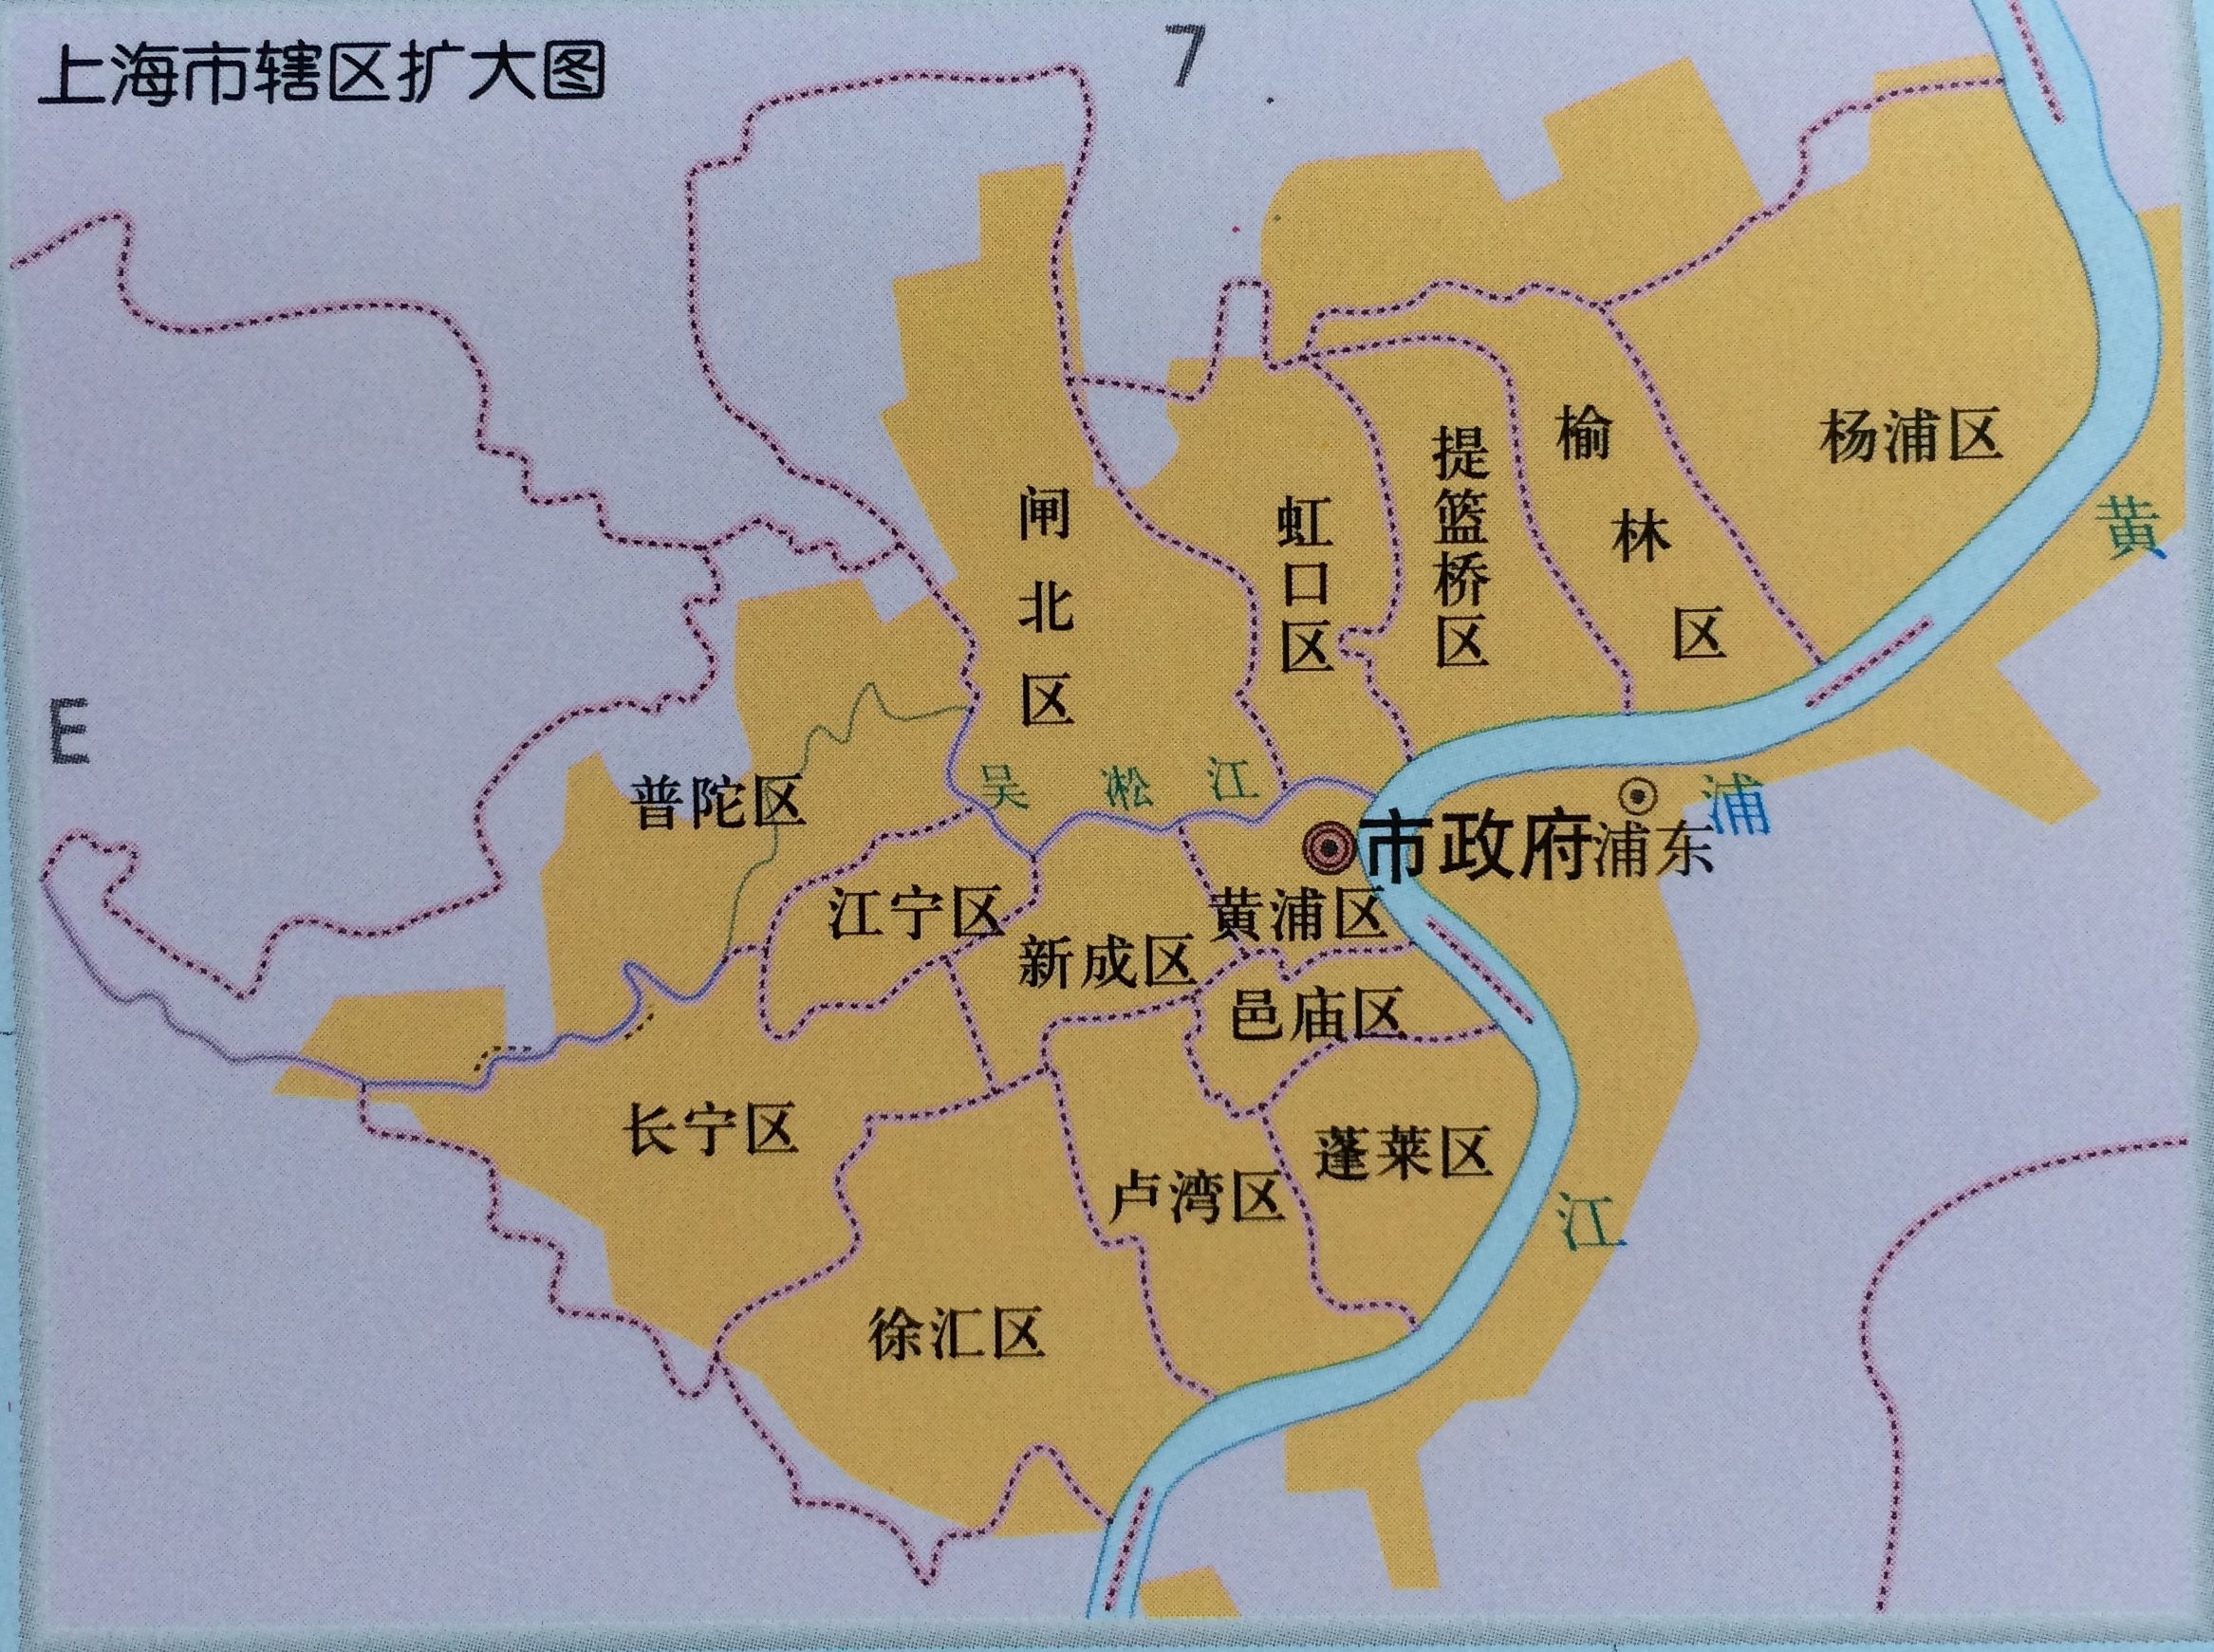 上海市行政区划变革